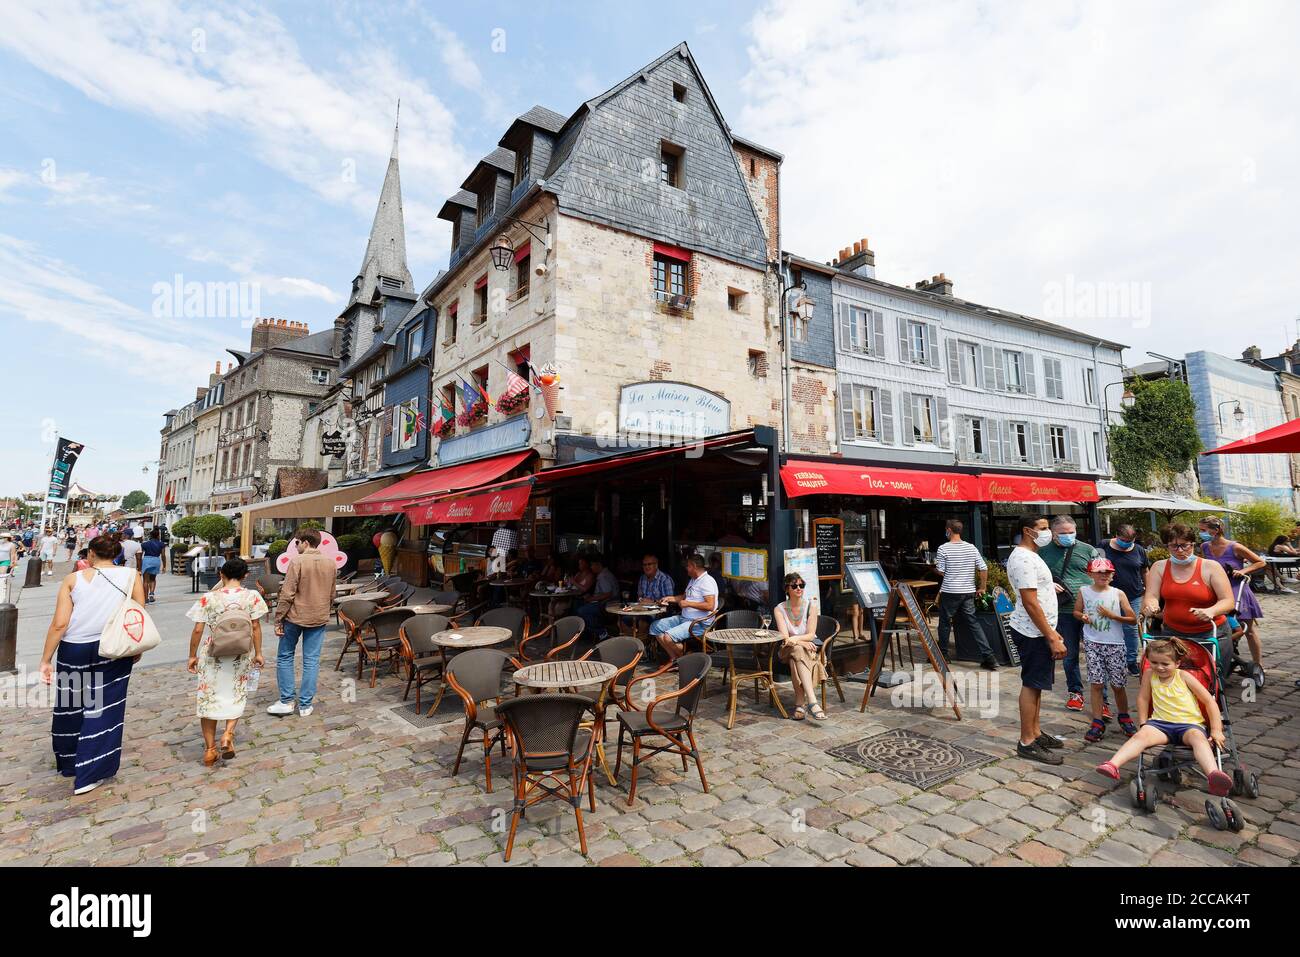 La Maison Bleue è un tradizionale caffè francese situato nel centro storico di Honfleur, il famoso resort in Normandia. Foto Stock